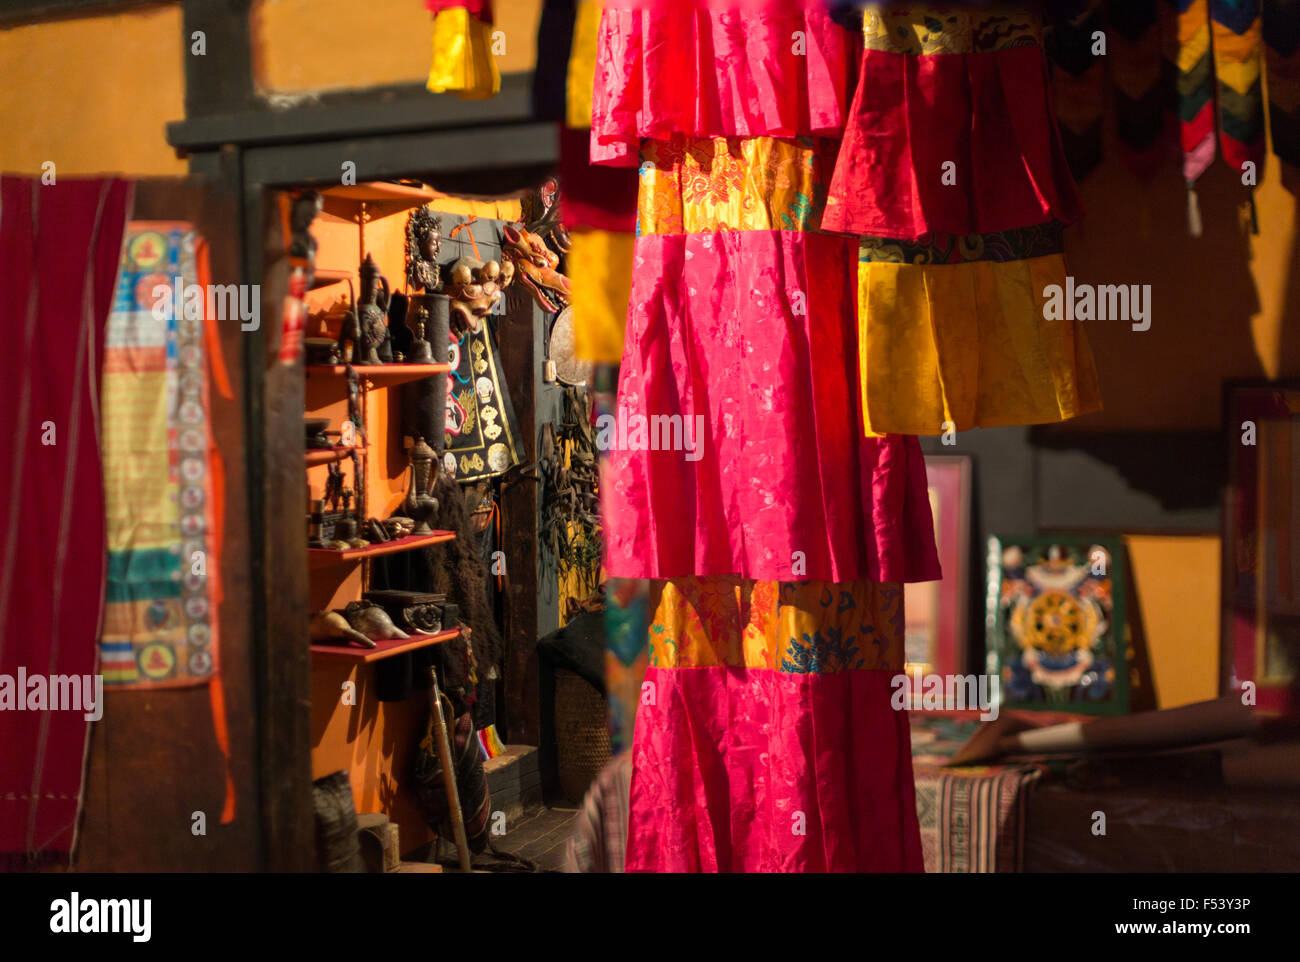 Boutique de souvenirs, de l'intérieur, le Bhoutan Bumthang, Jakar Banque D'Images